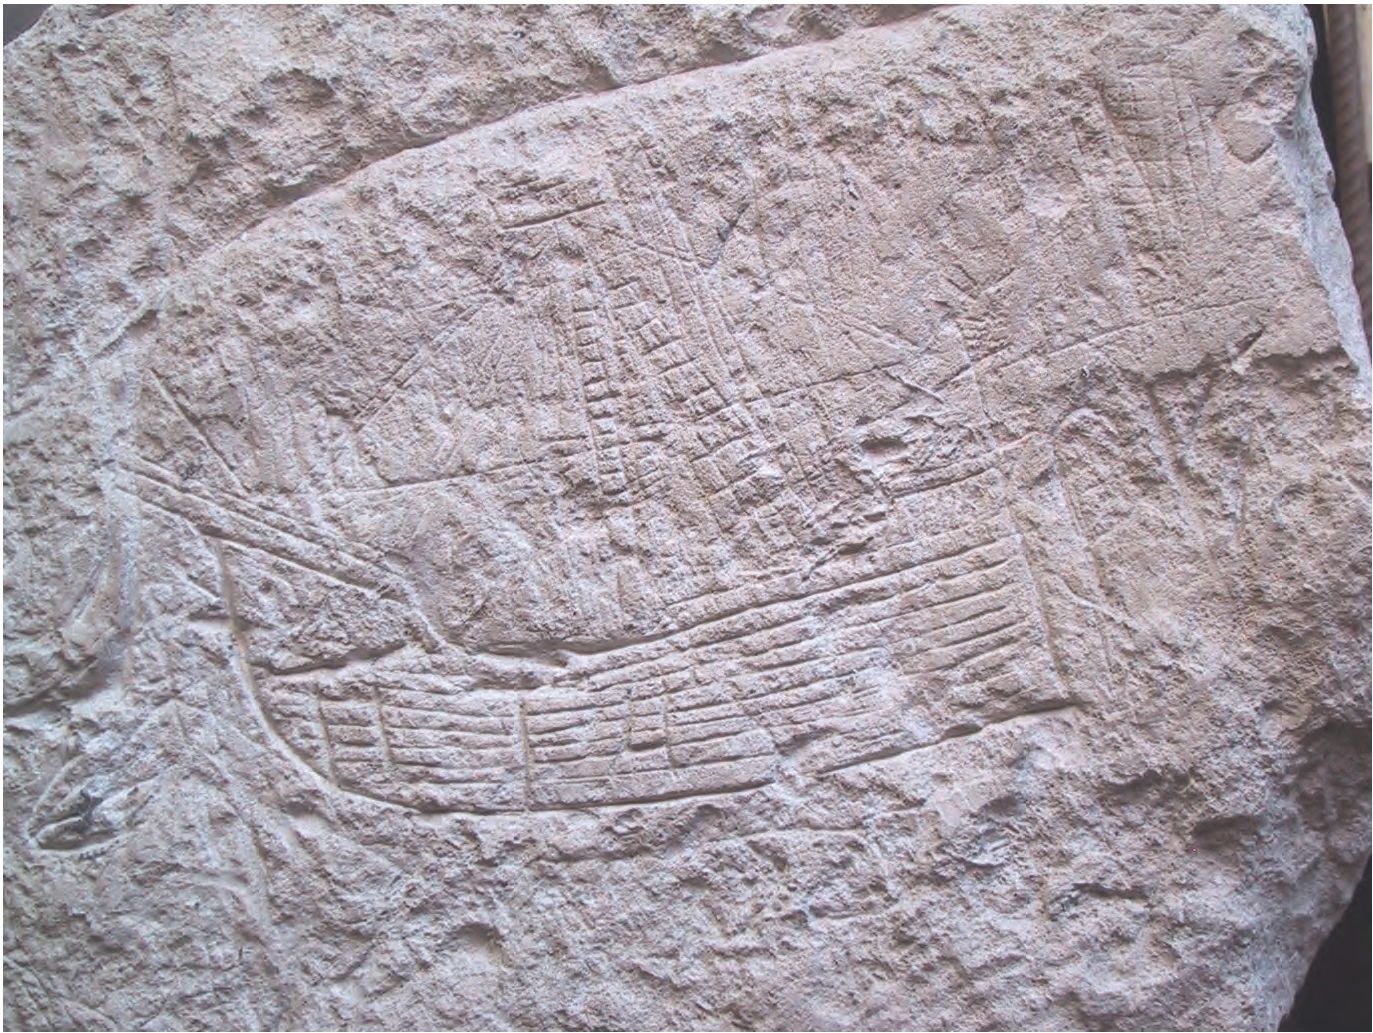 56. Фрагмент блока из башни Каламиты с изображением кораблей, известняк. (Рисунок, скорее всего, был сделан одним из несших службу; может быть датирован временем не ранее середины XIII—XIV вв.)